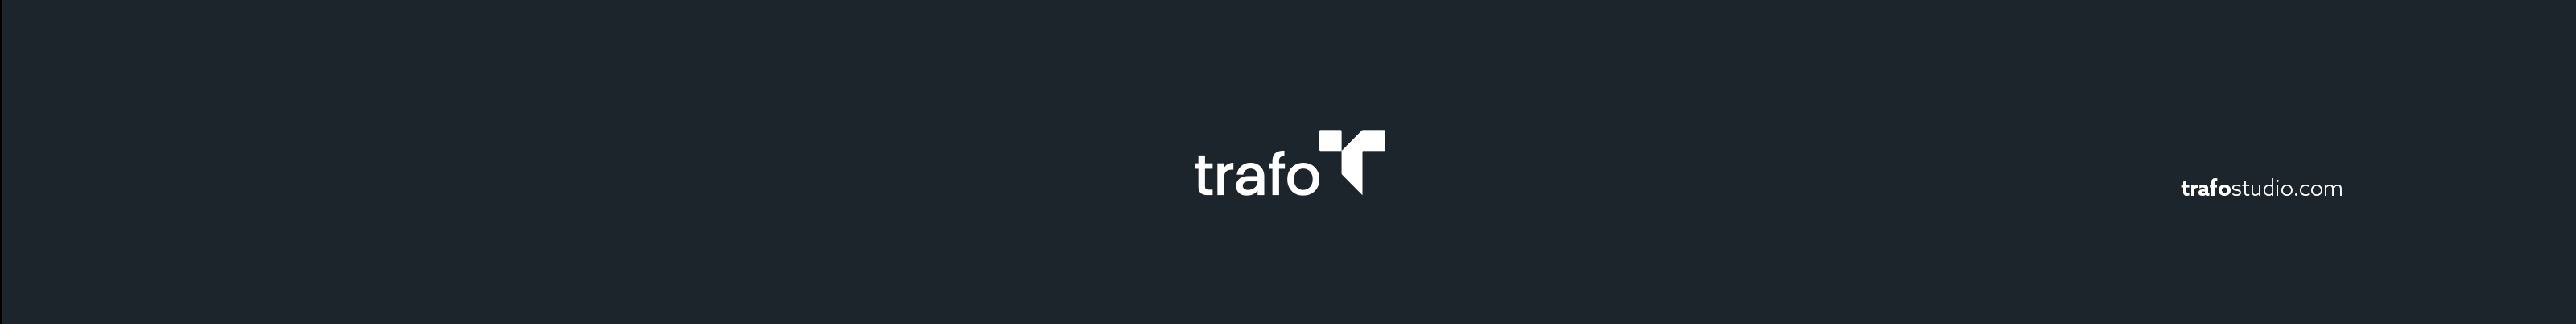 Trafo Studio profil başlığı